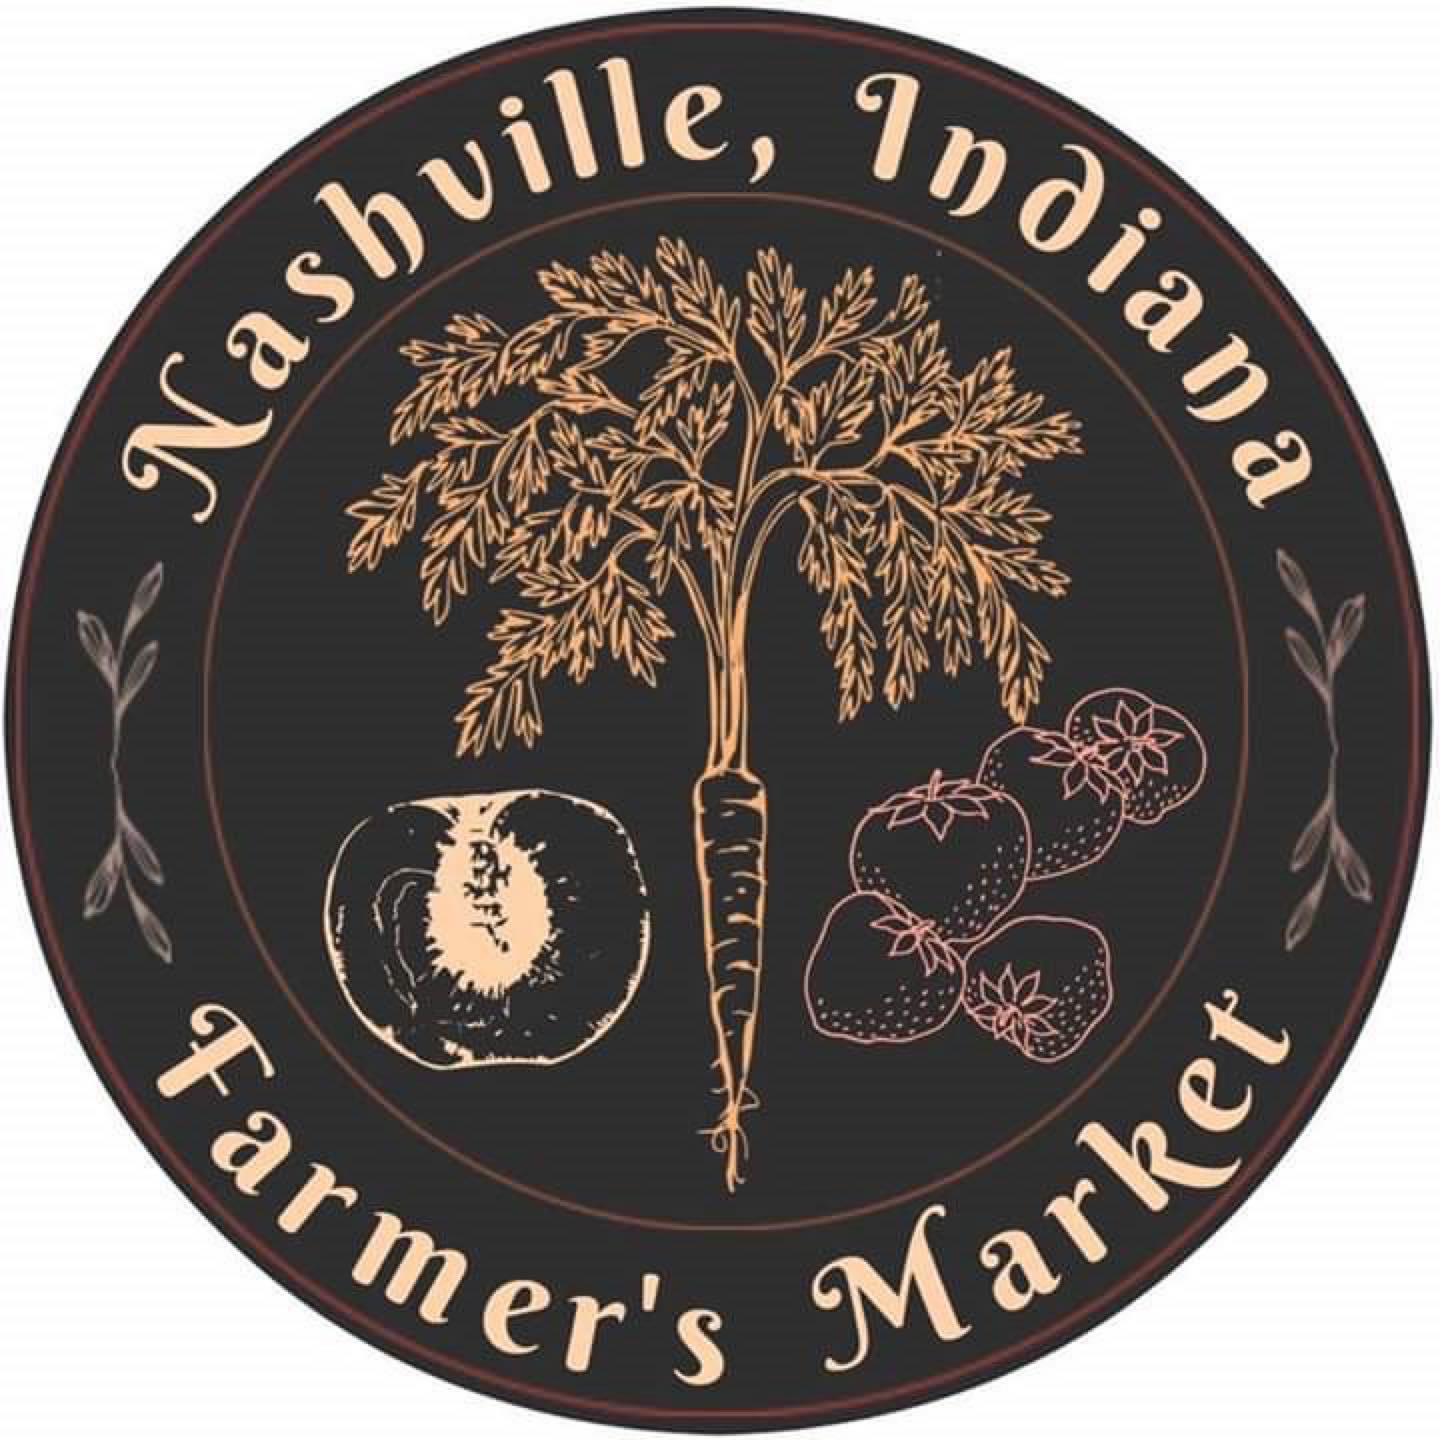 Nashville Indiana Farmers Market